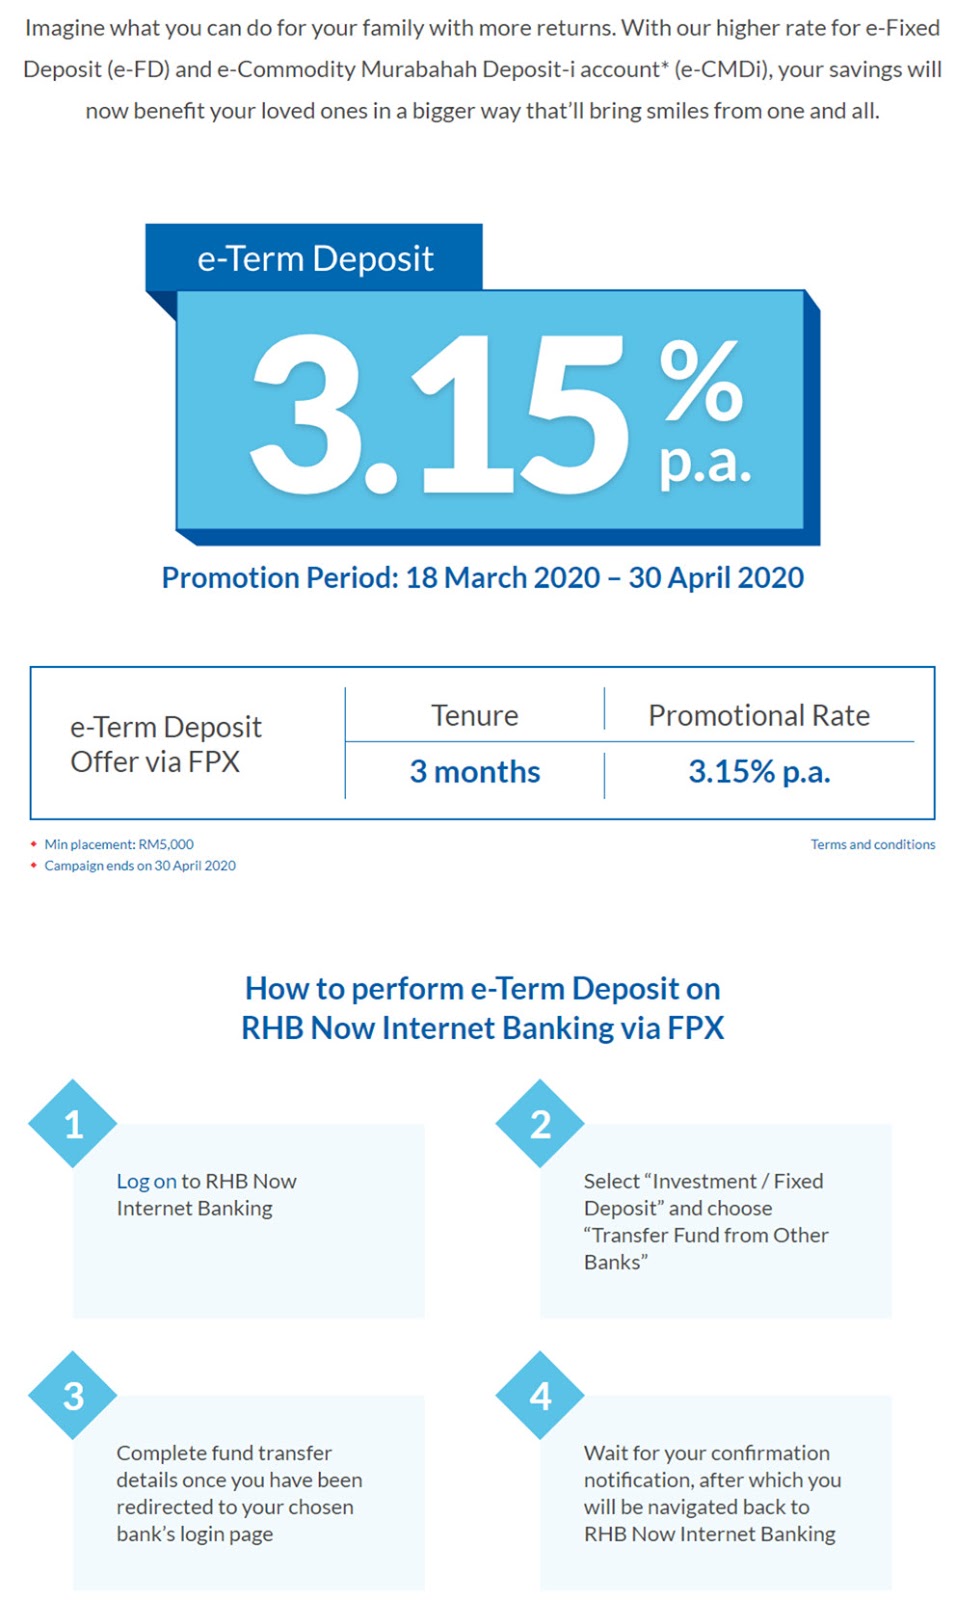 4月份各家银行Fixed Deposit 定期存款优惠!利息高达3.50%p.a! - LEESHARING